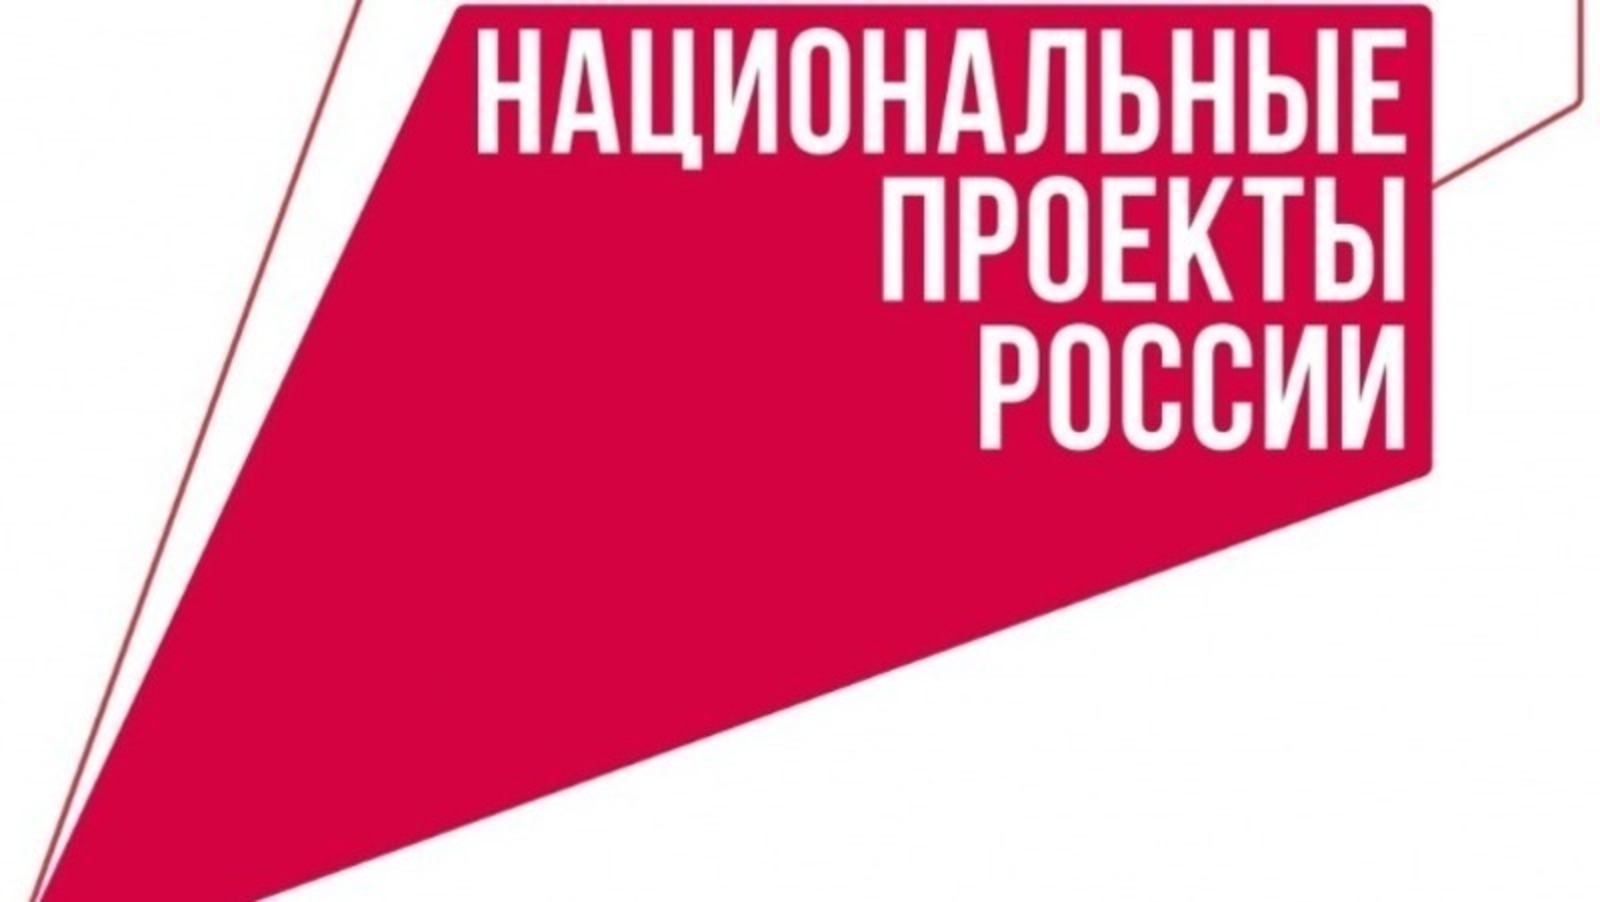 В Башкортостане предприятие сэкономило более 26 млн рублей за счет голосового помощника собственной разработки